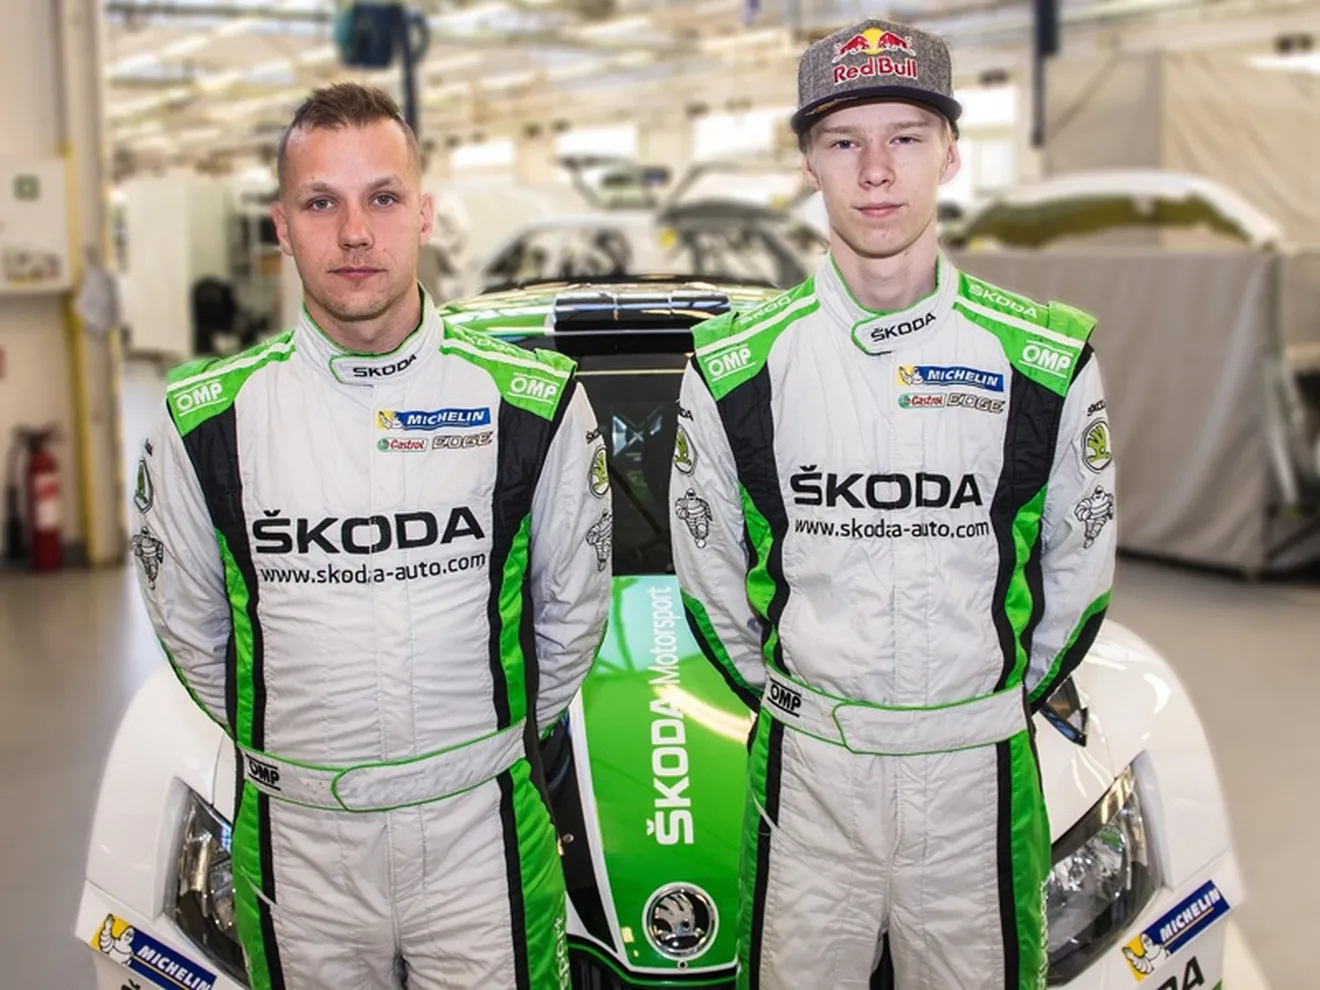 Kalle Rovanperä, nuevo piloto oficial de Skoda en el WRC